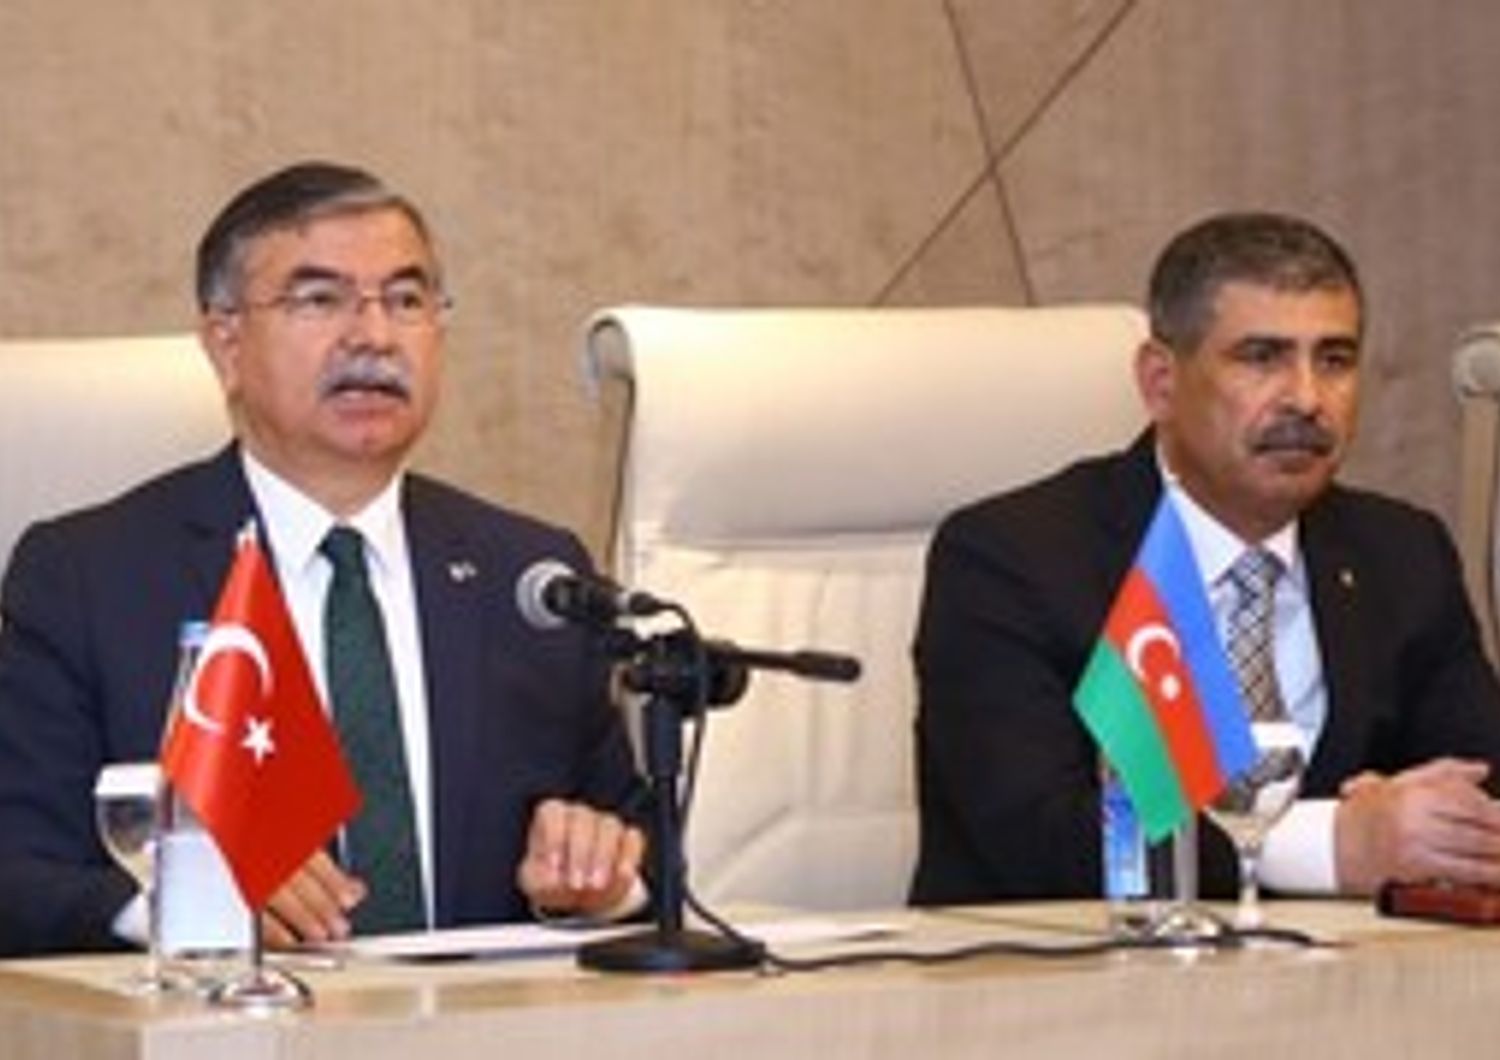 &nbsp;Accordo ministro difesa Turchia Azerbaijan Zakir Hasanov e ministro difesa Georgia Ismet Yilmaz - afp